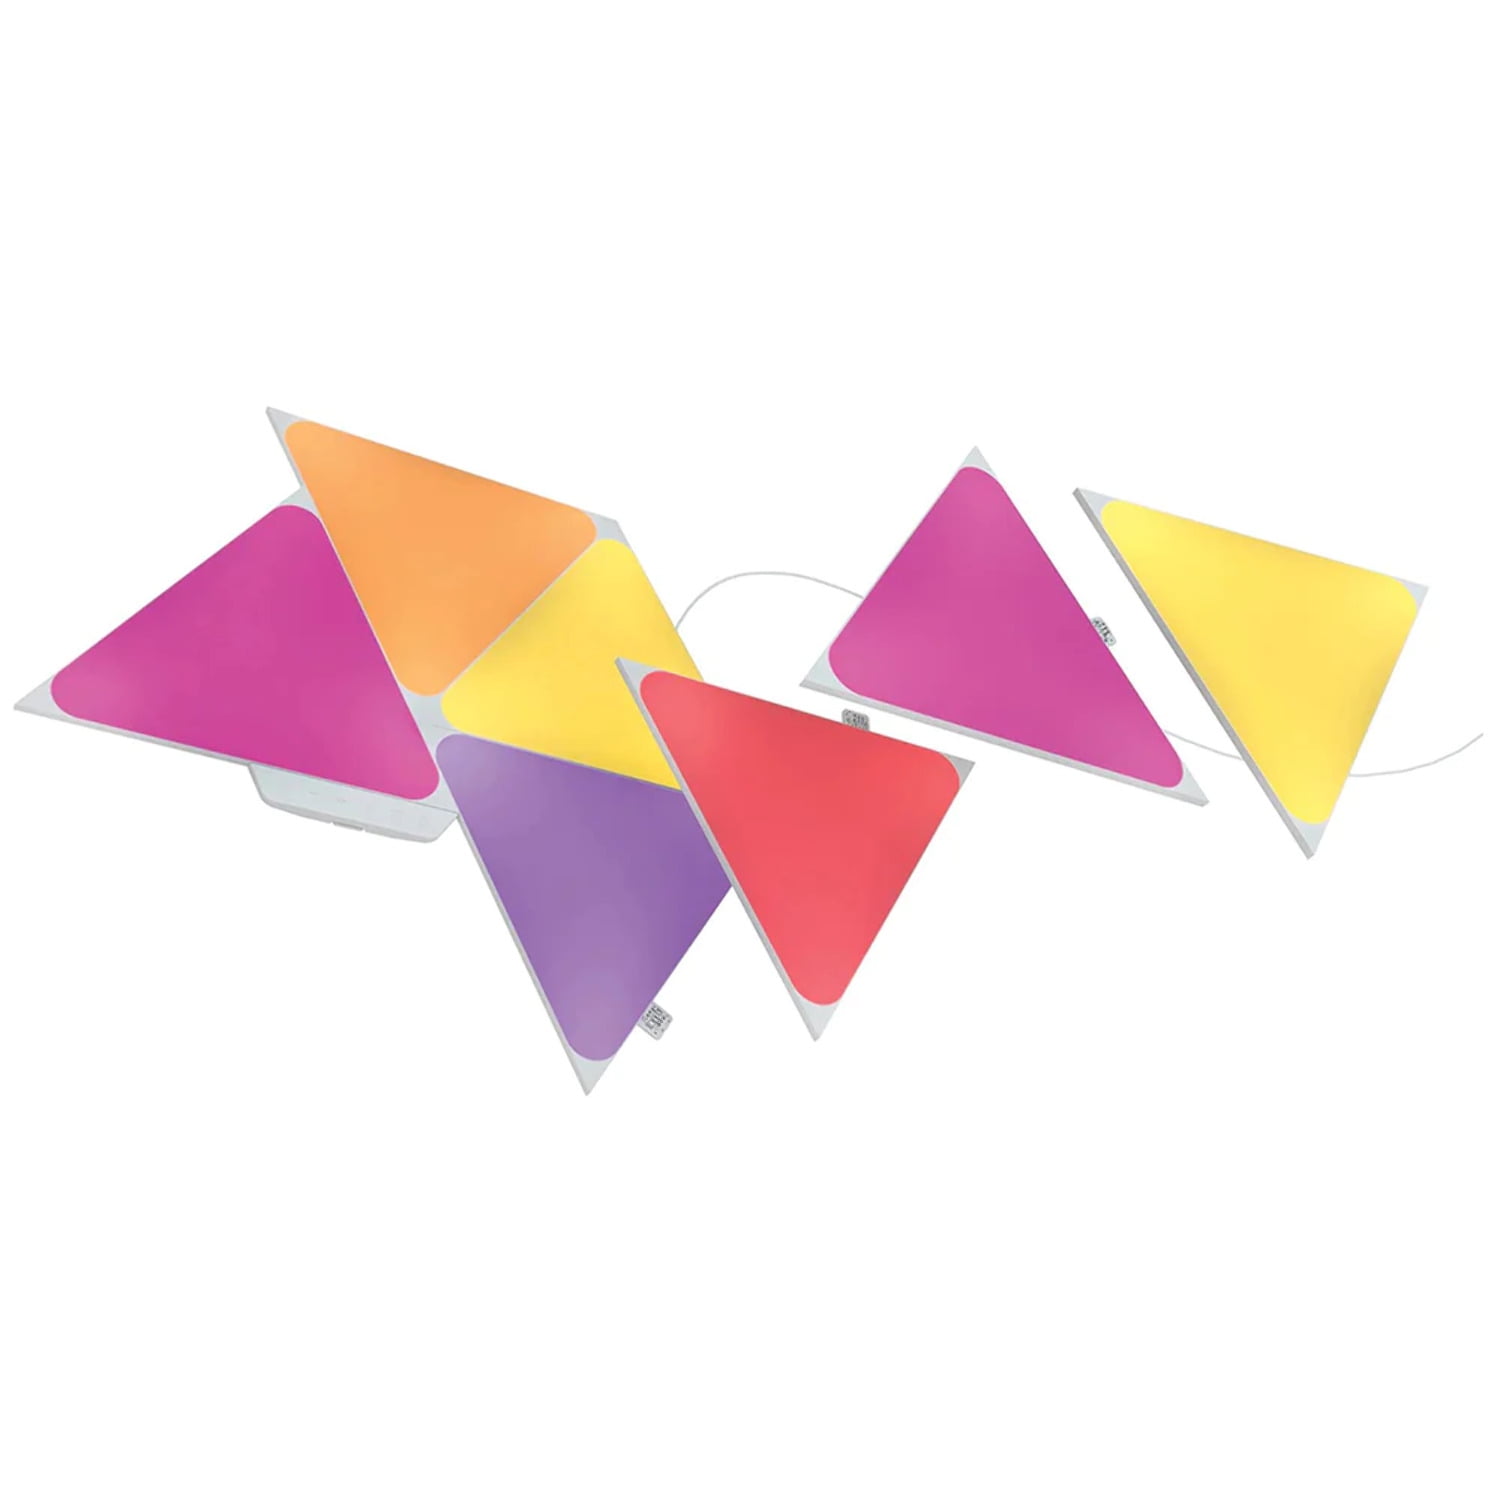 Smarter Shapes Kit Triangles - Nanoleaf